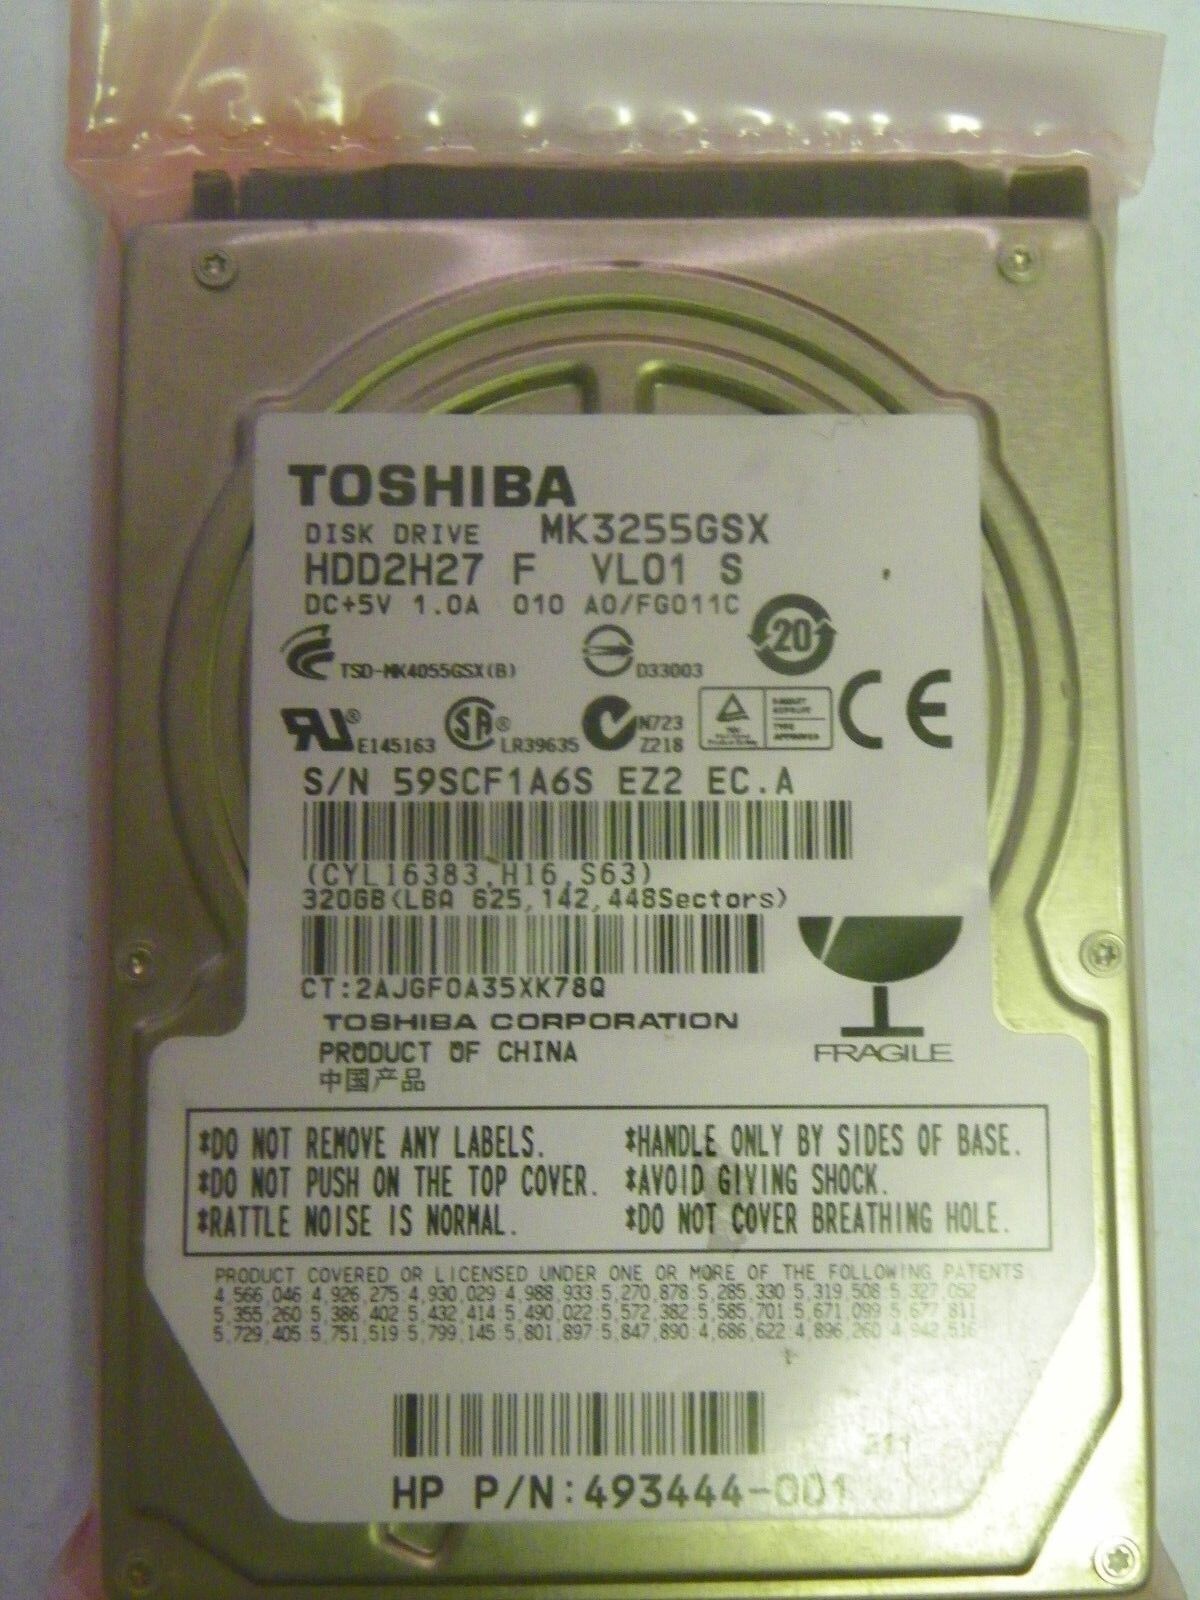 Toshiba MK3255GSX (HDD2H27 F VL01 S) 010 A0/FG011C 320GB 2.5